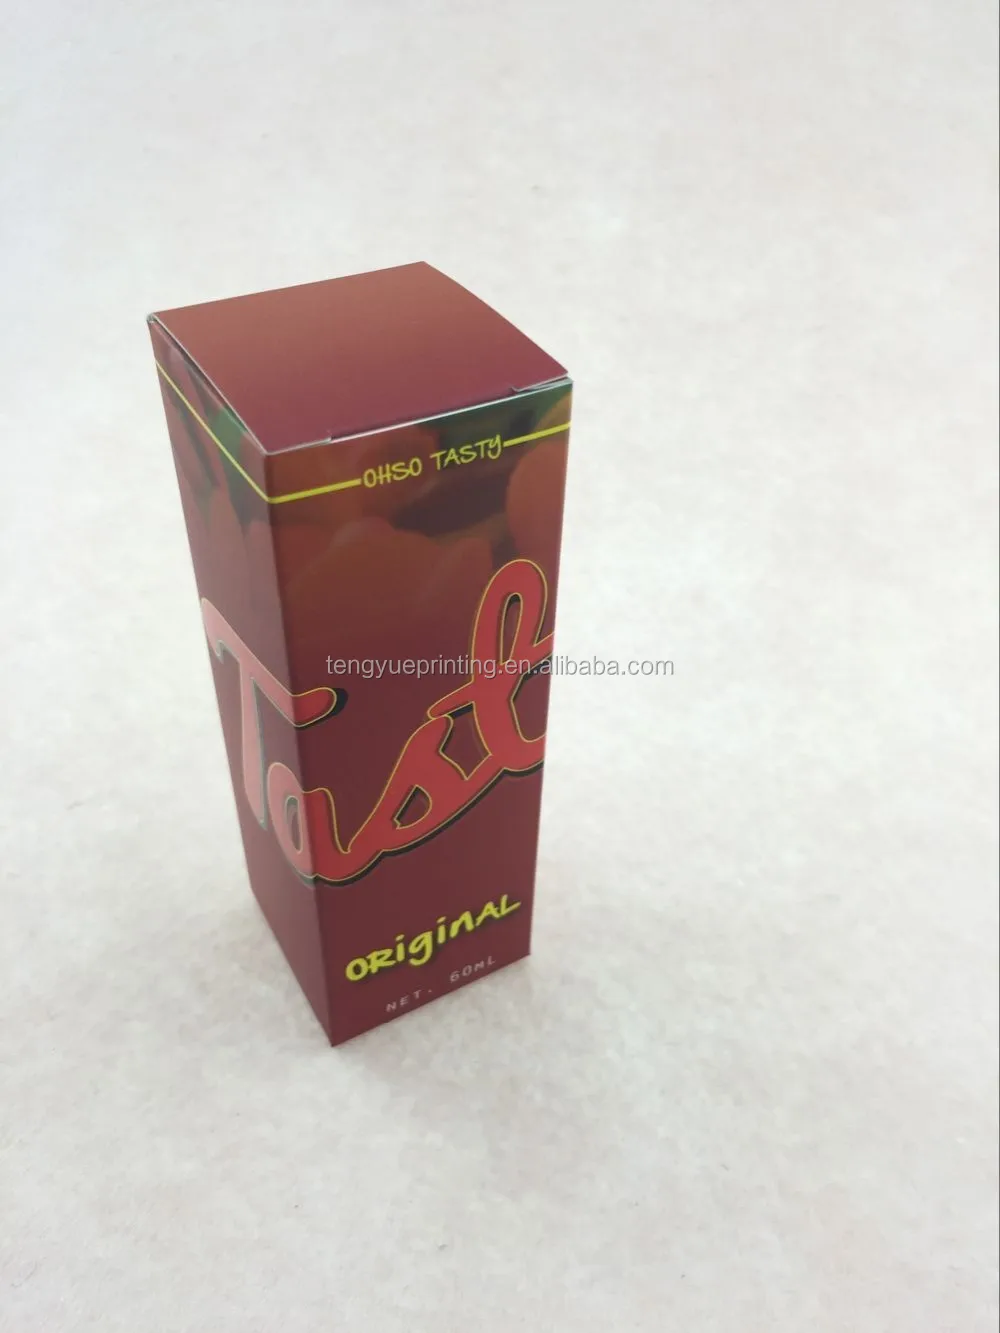 Download 10ml 30ml Dropper Bottle Box/custom Packaging Paper Box - Buy 10ml Bottle Box,30ml Dropper ...